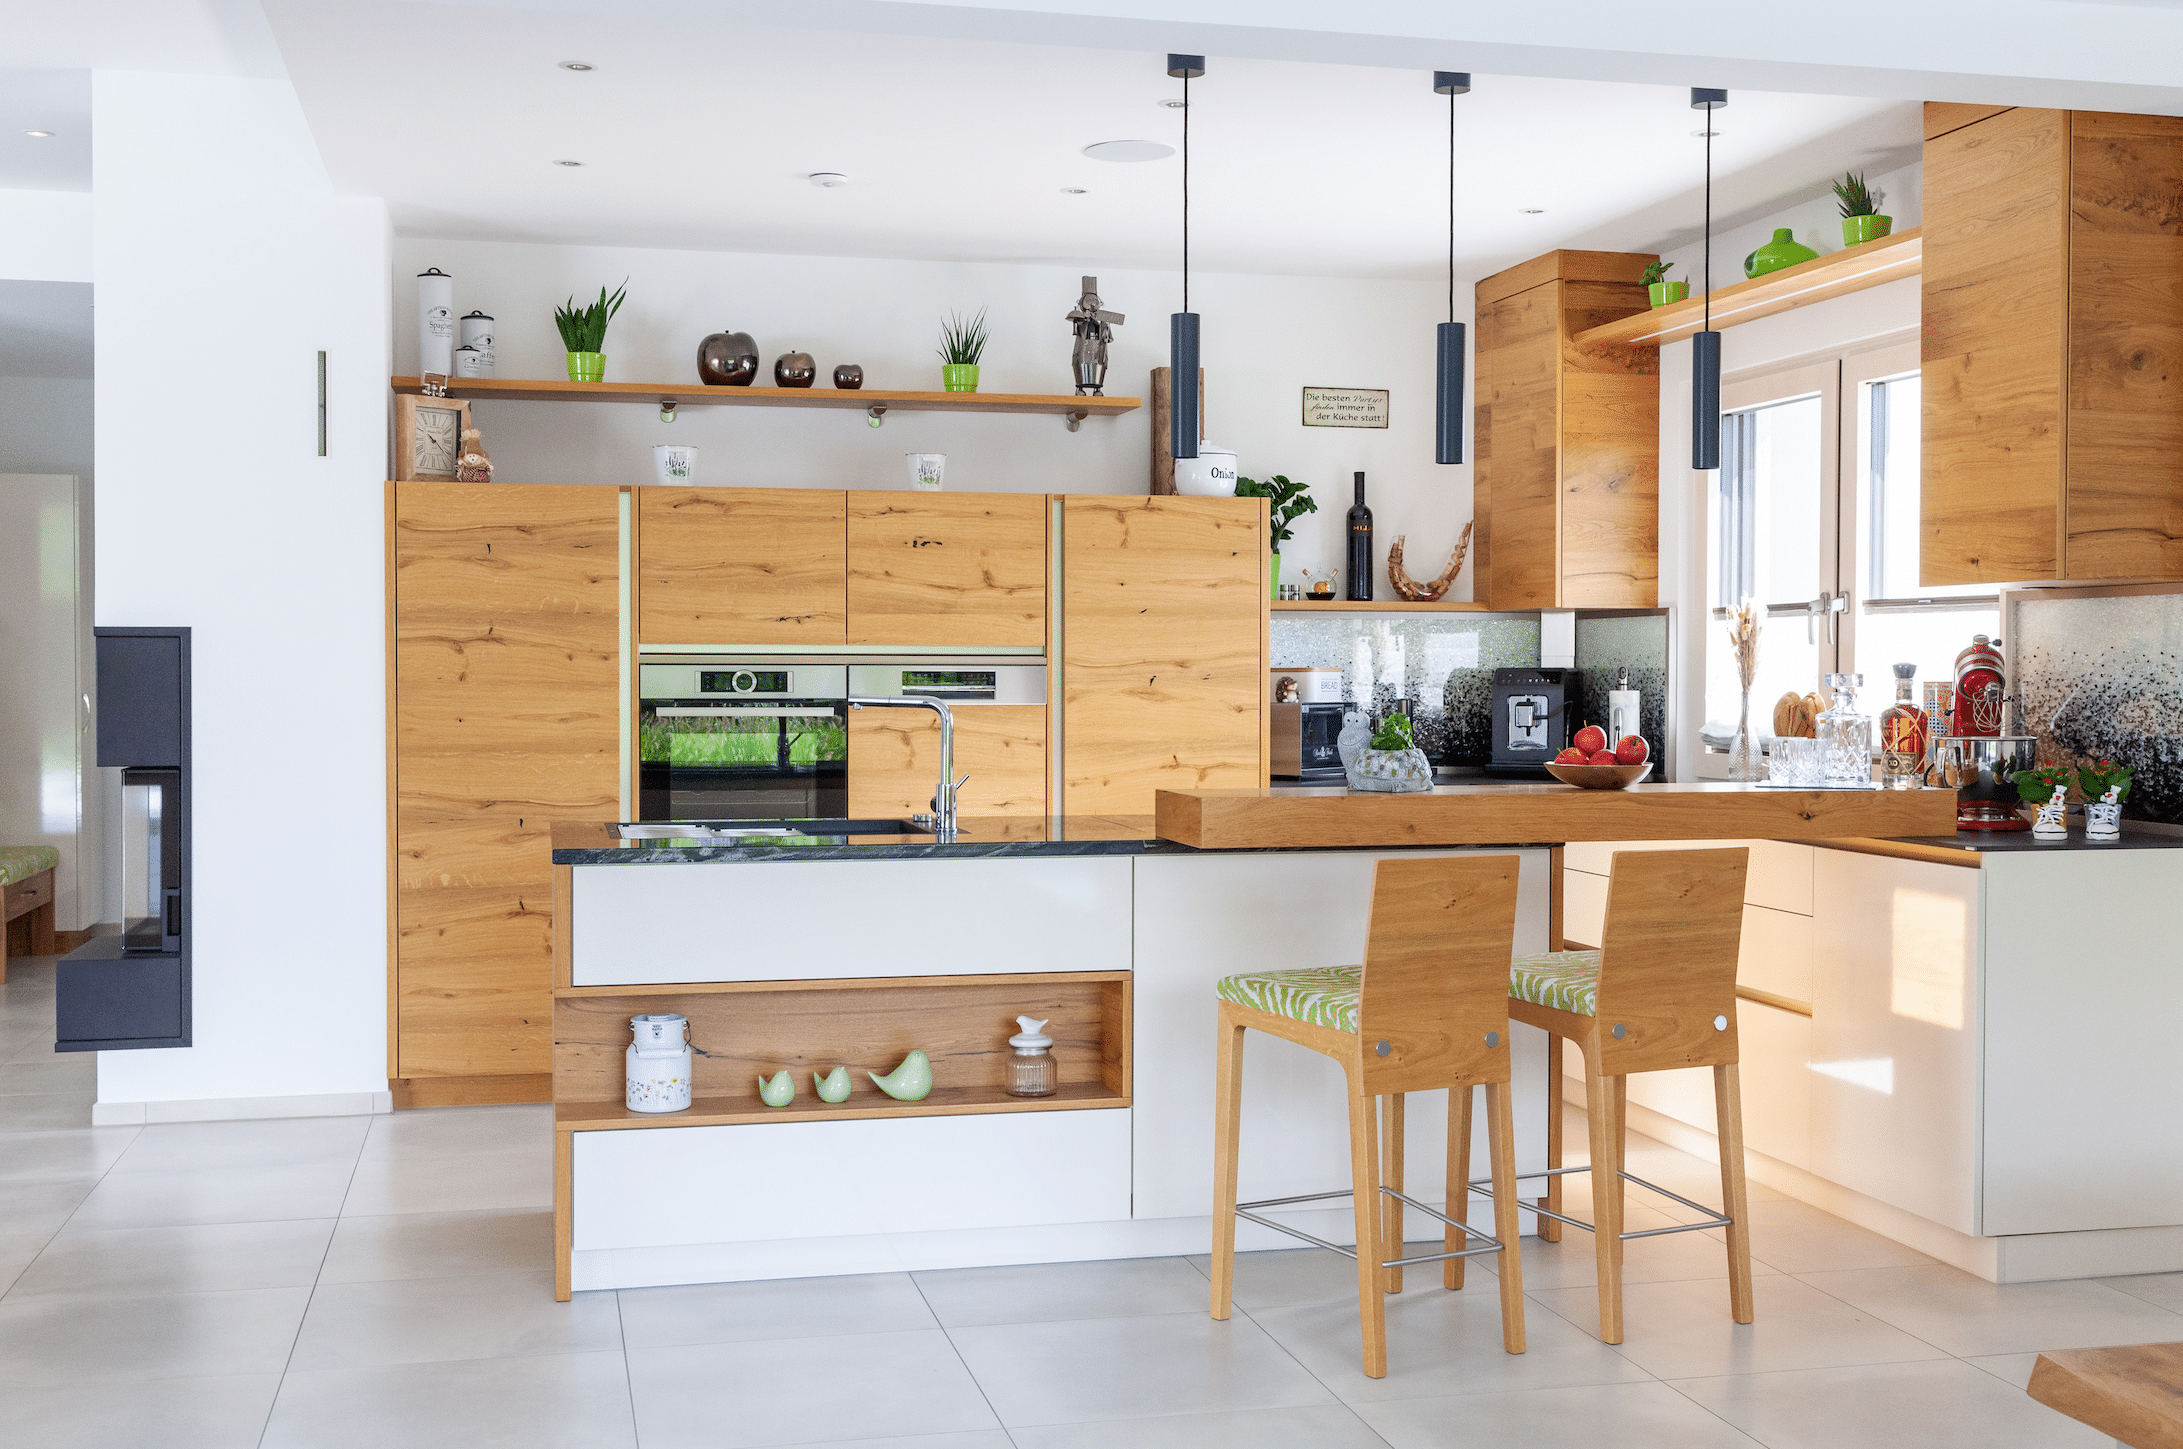 Hartl Haus zeigt eine Küche aus Holz mit verschiedenen Elektrogeräten, einer Barfunktion, hohen Stühlen dazu und weißen Fliesen am Boden.